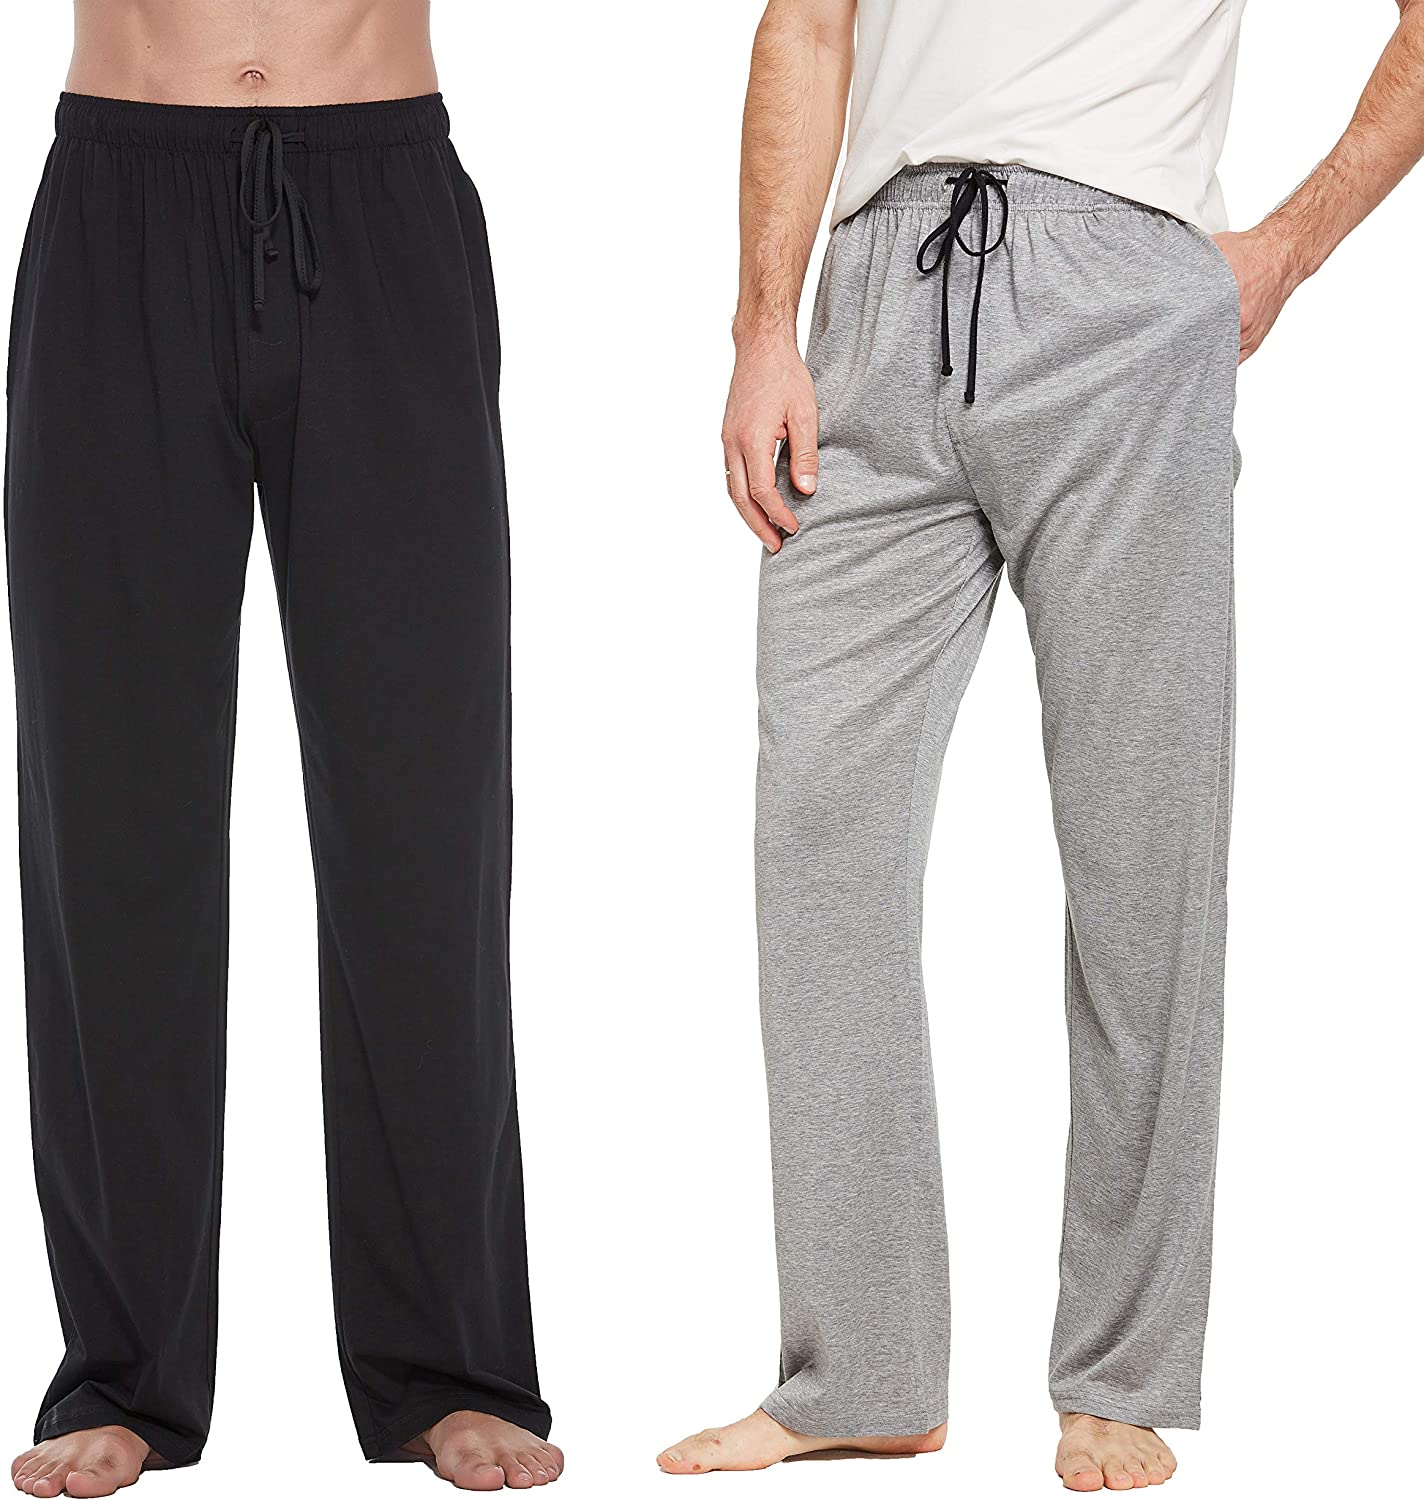 CYZ Women's Cotton Stretch Knit Pajamas Jogger Pants/Lounge Pants